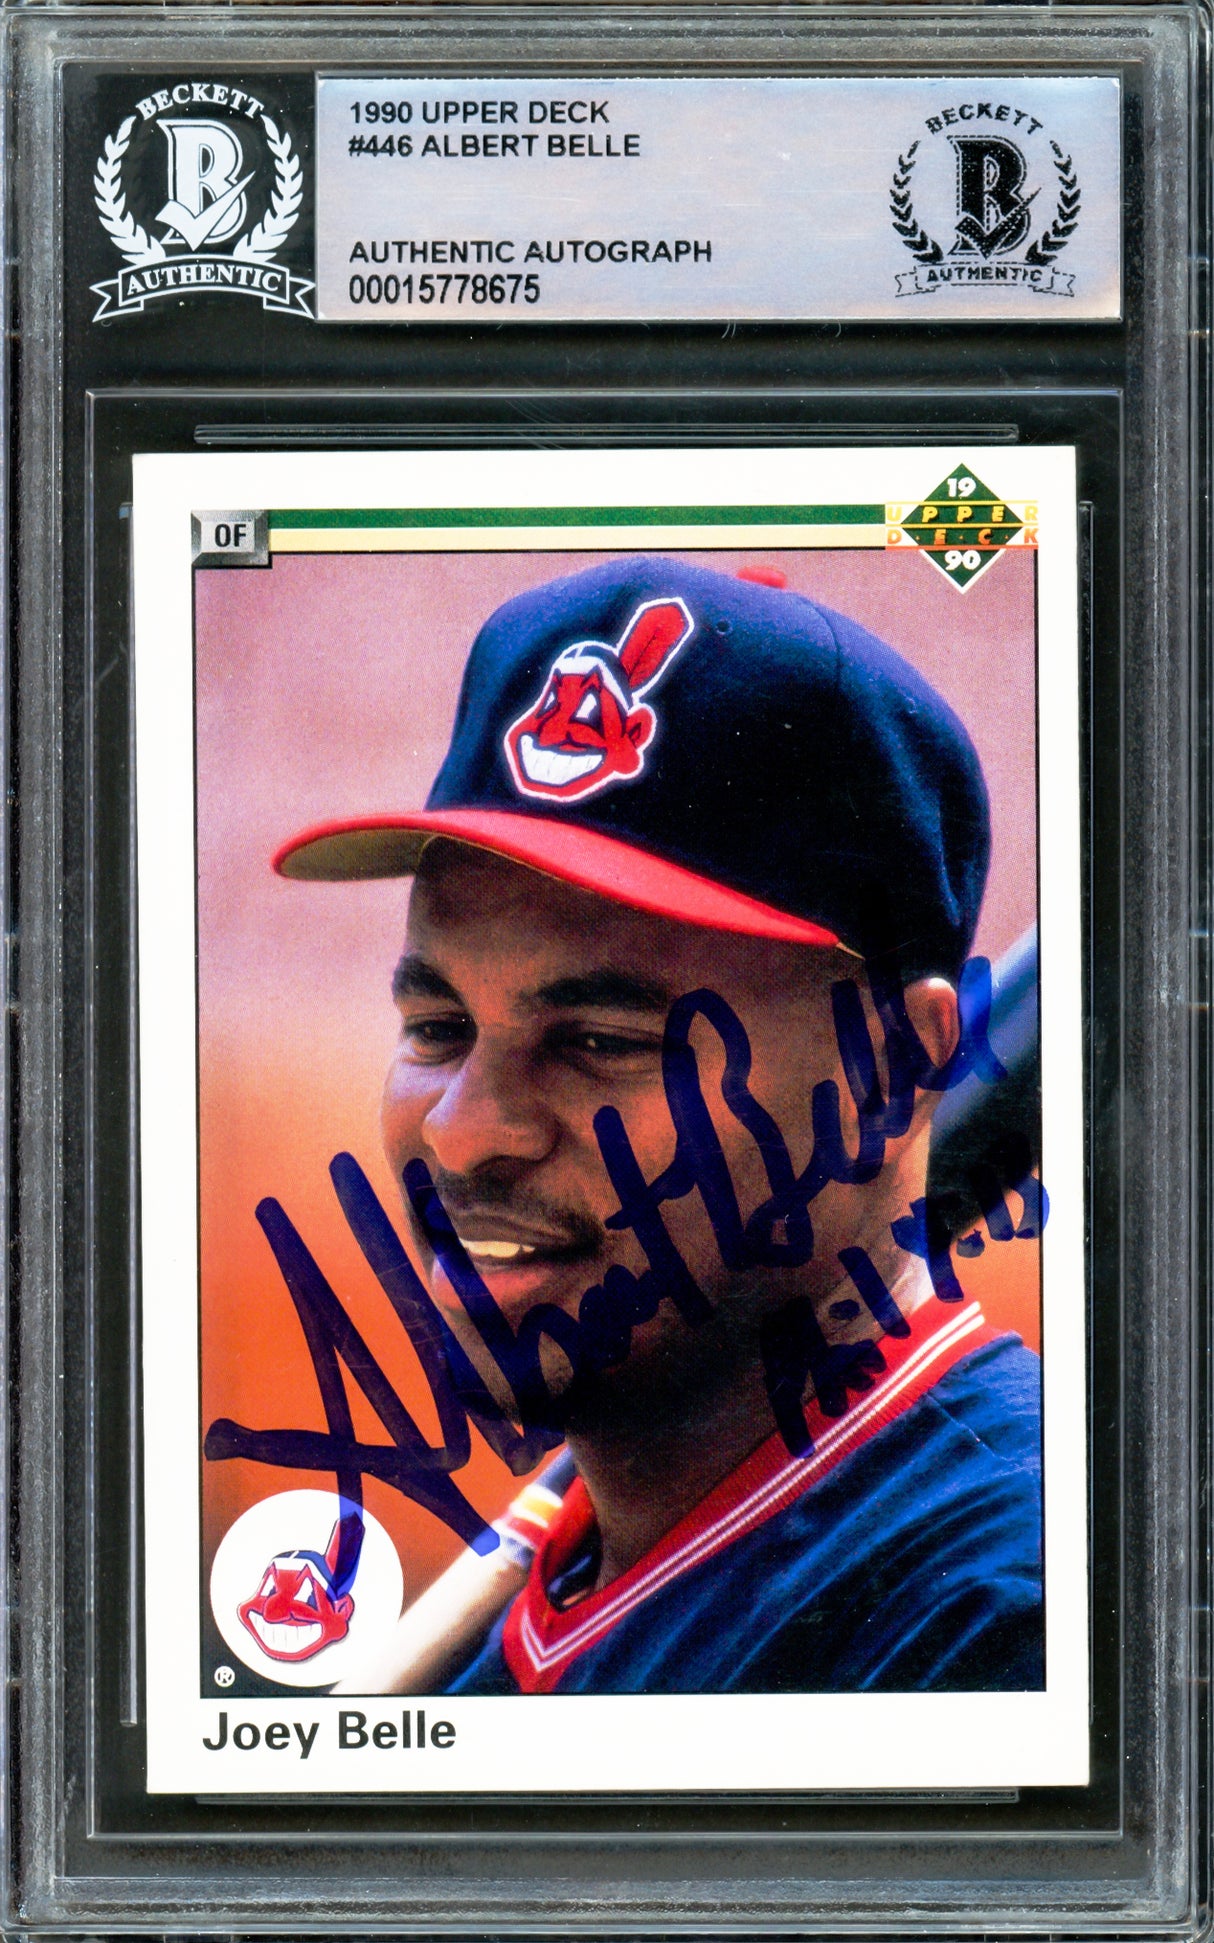 Albert Joey Belle Autographed 1990 Upper Deck Card #446 Cleveland Indians Beckett BAS #15778675